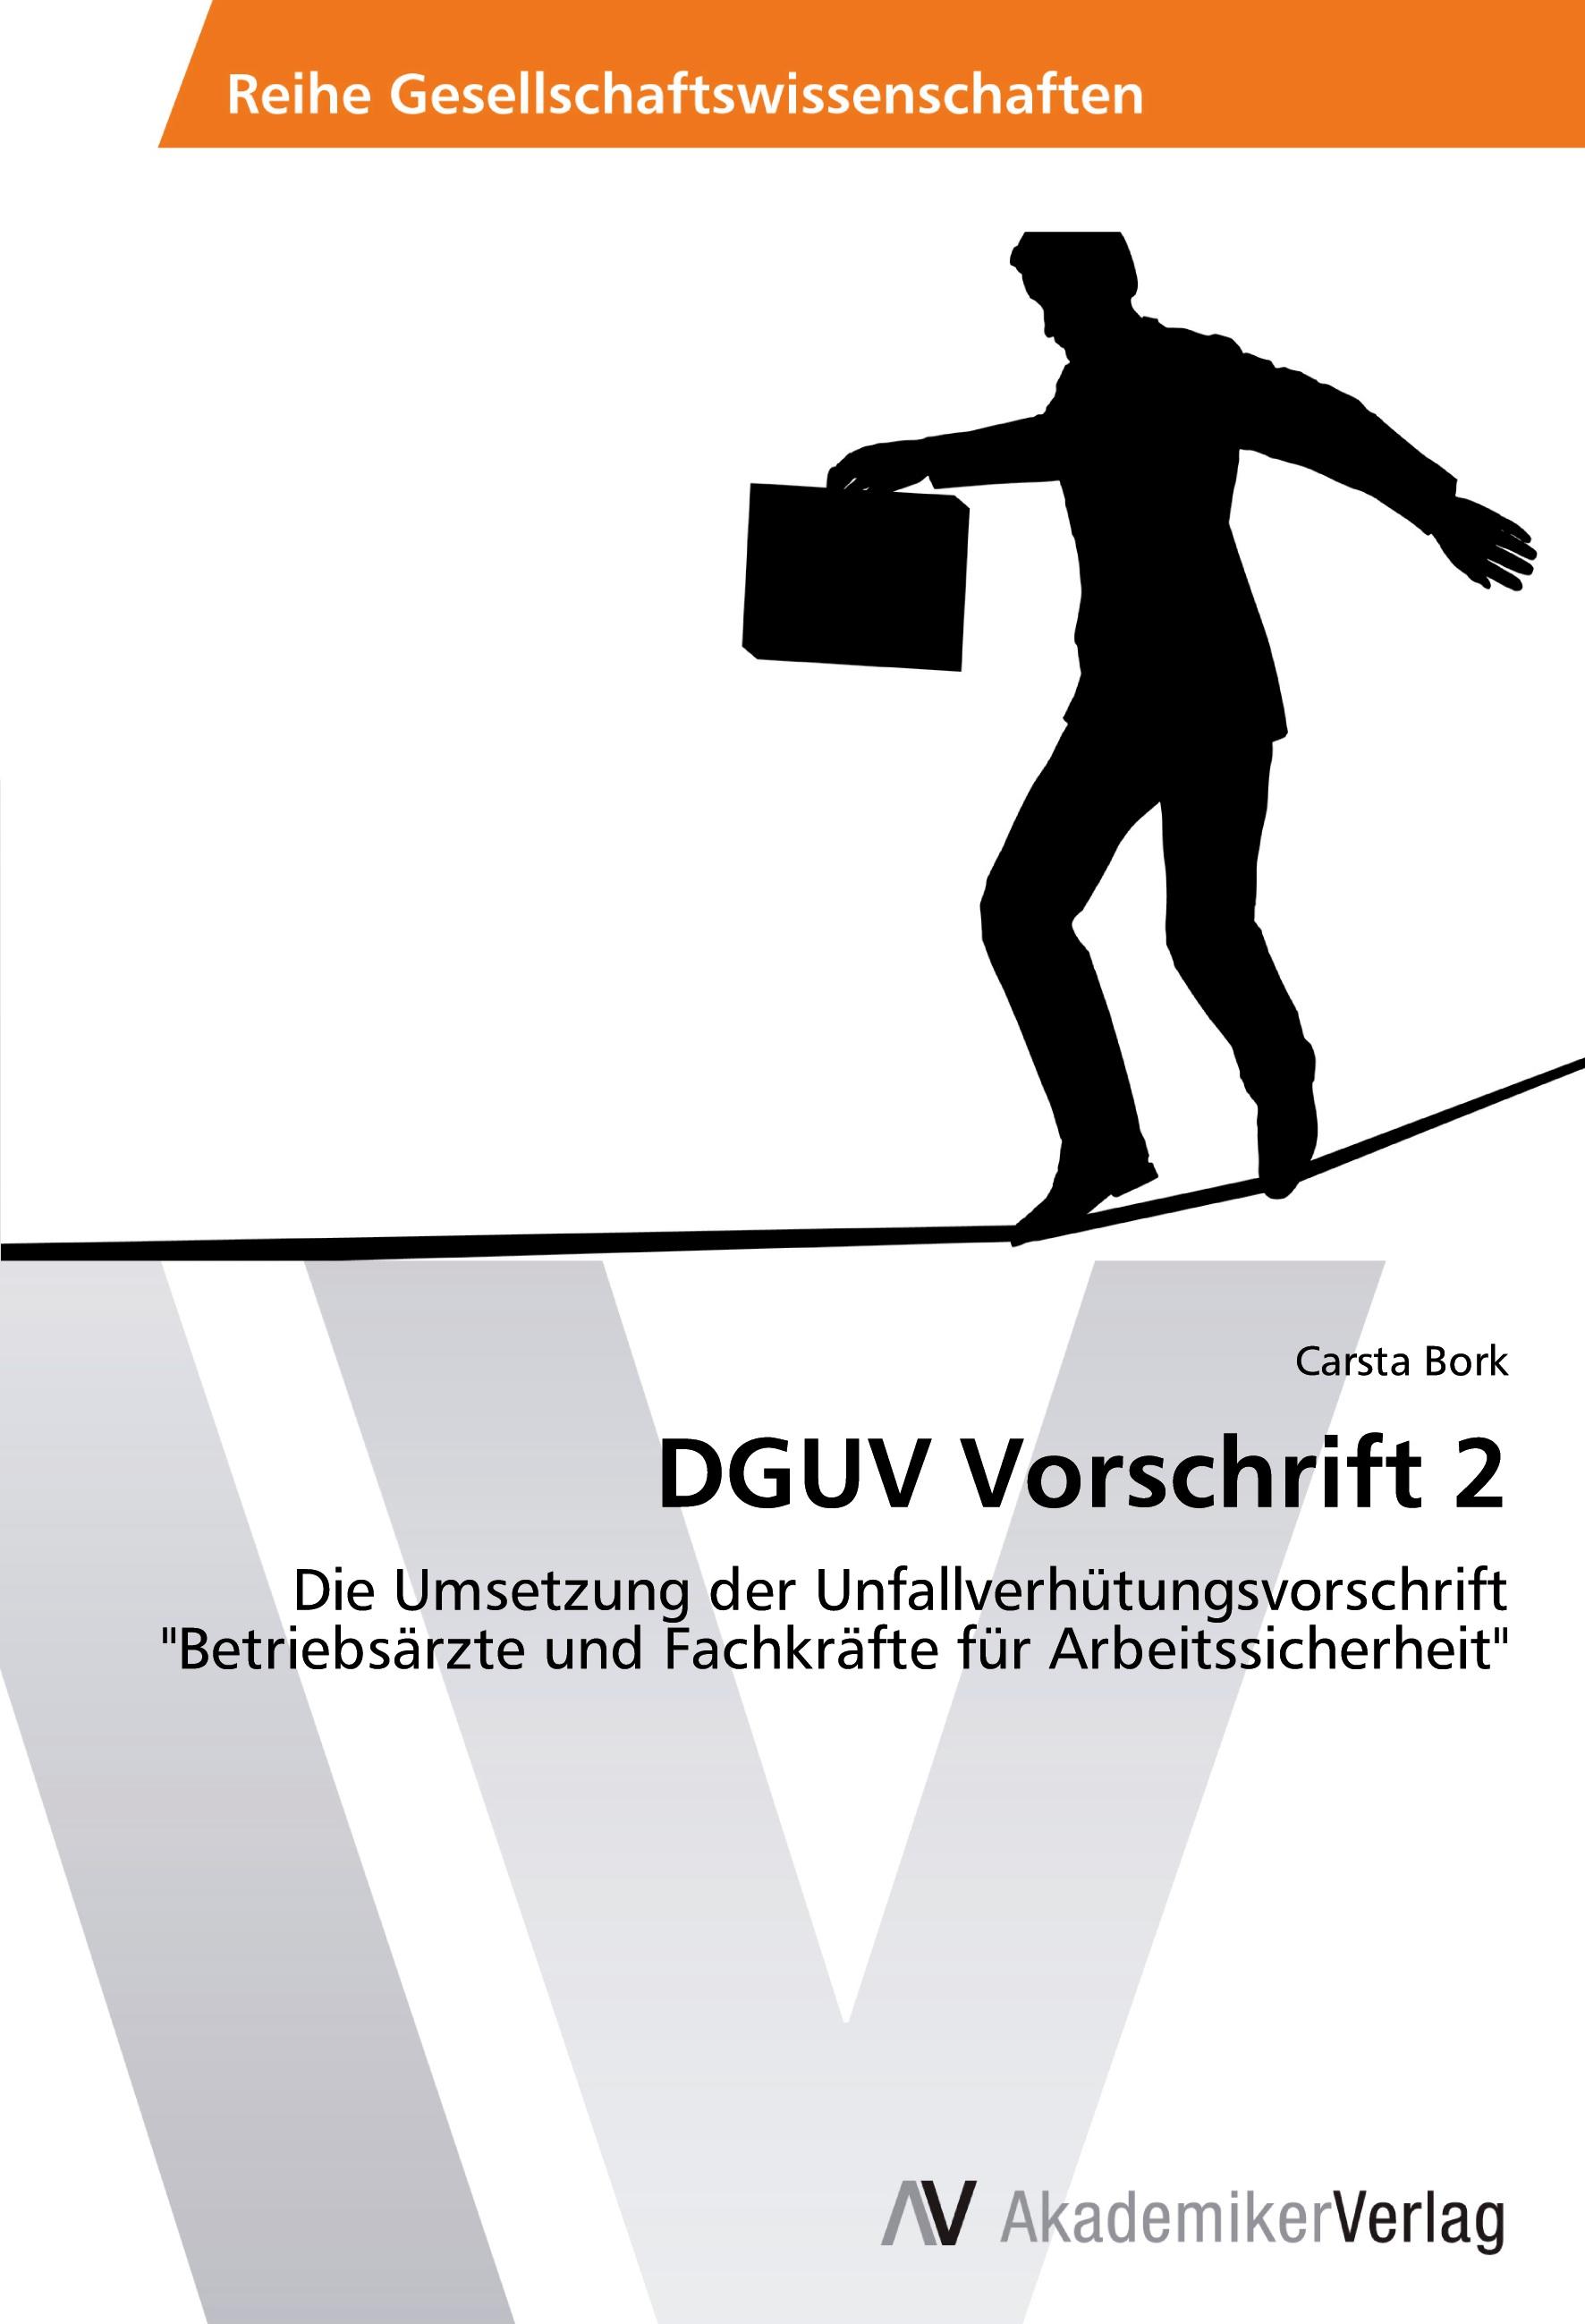 DGUV Vorschrift 2 | Die Umsetzung der Unfallverhütungsvorschrift 